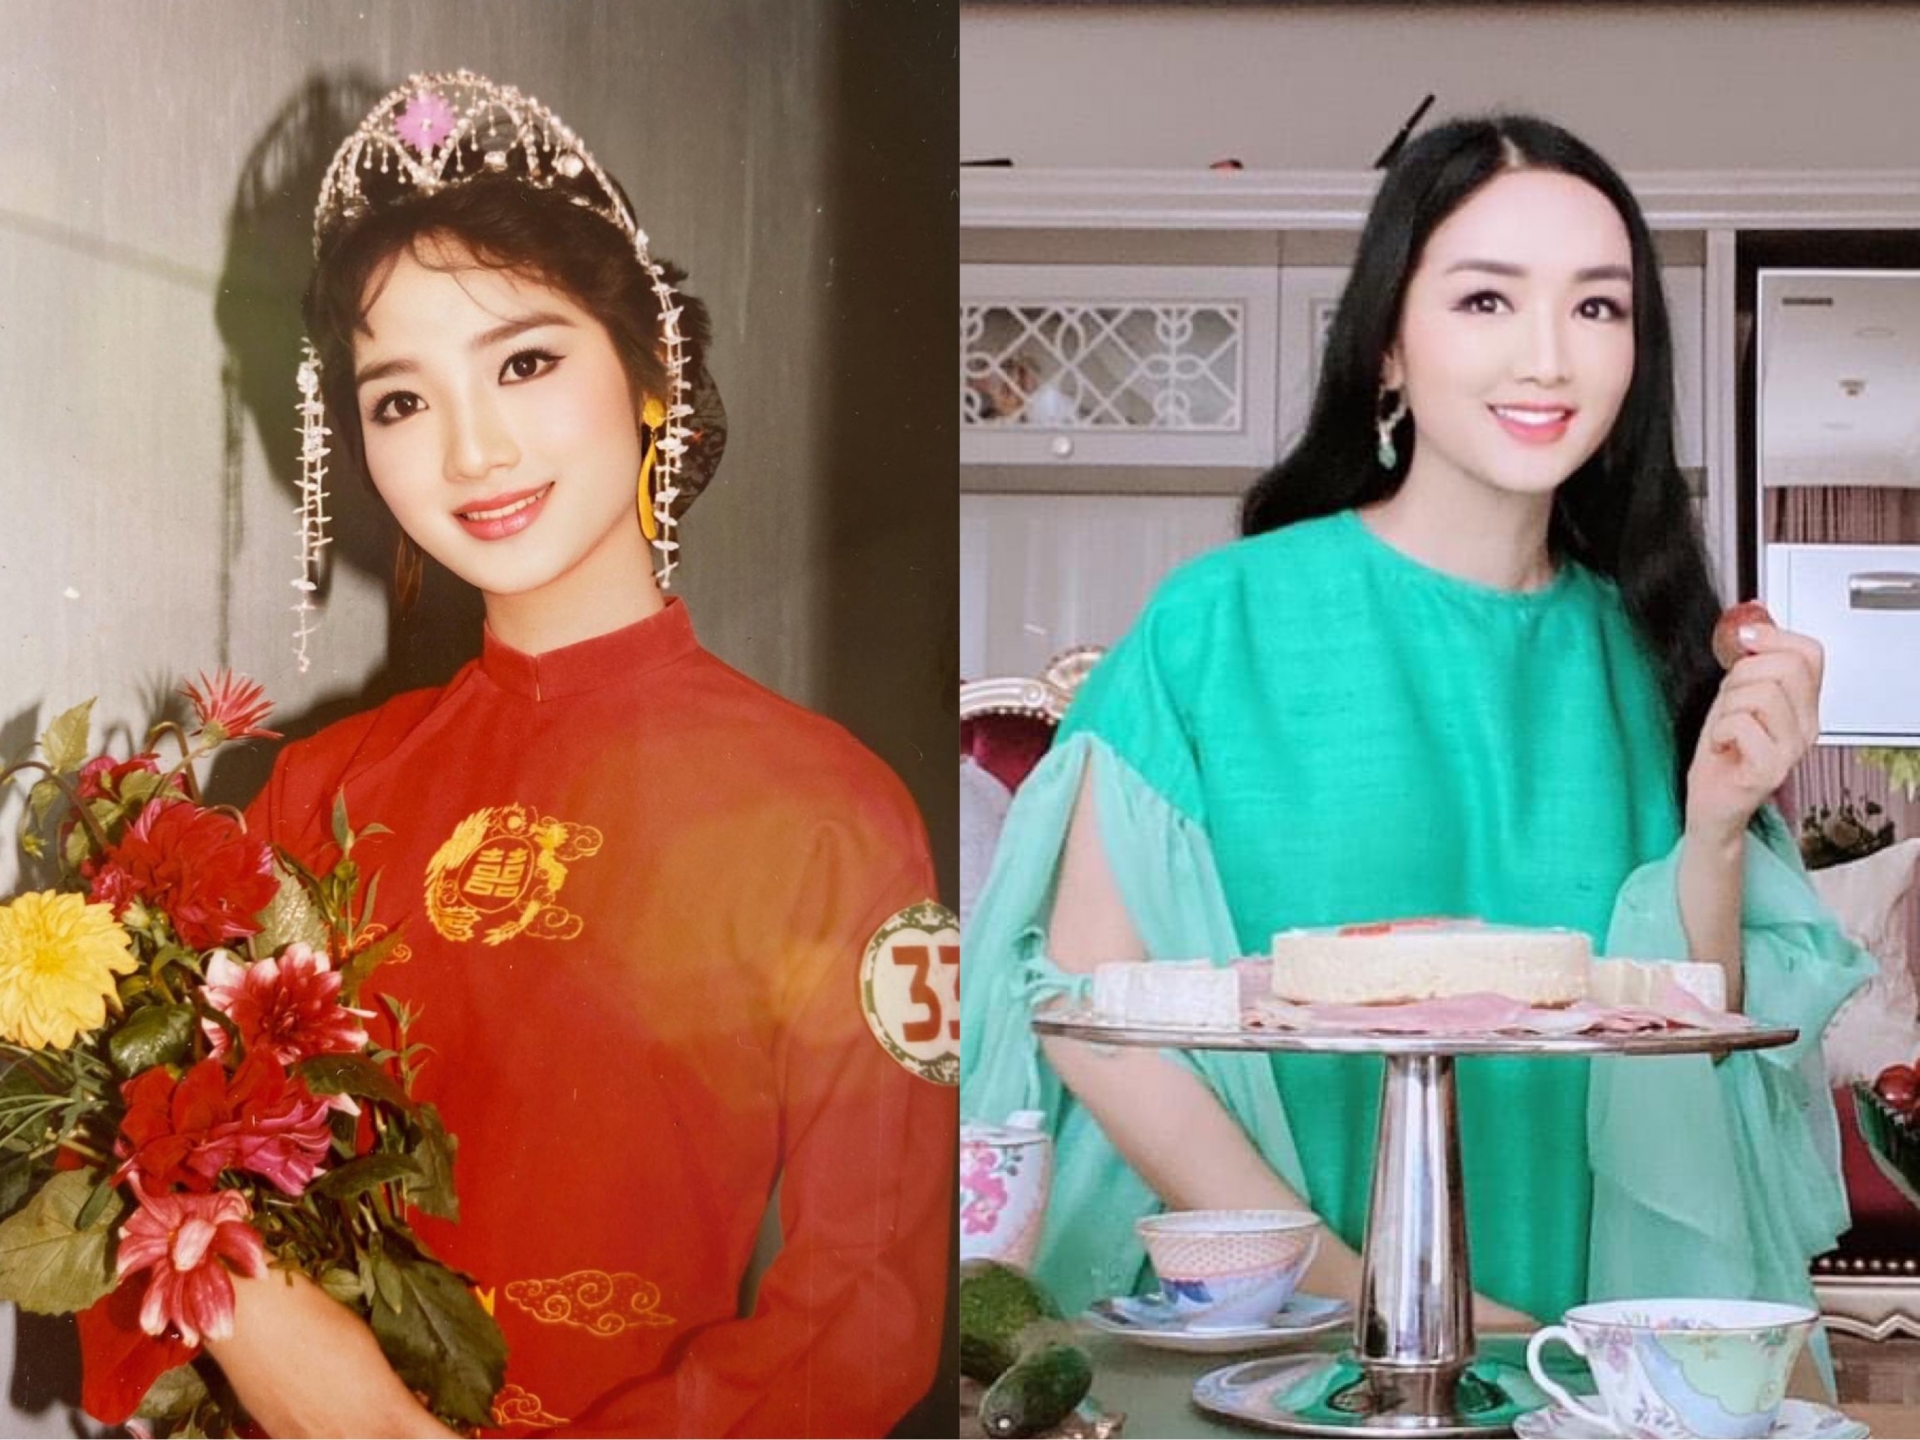 Thời điểm Giáng My đăng quang Hoa hậu Đền Hùng năm 1992 và hiện tại trông chẳng hề khác nhau là bao. Từng đường nét trên khuôn mặt của cô vẫn vô cùng nổi bật và chẳng hề có dấu hiệu lão hoá.